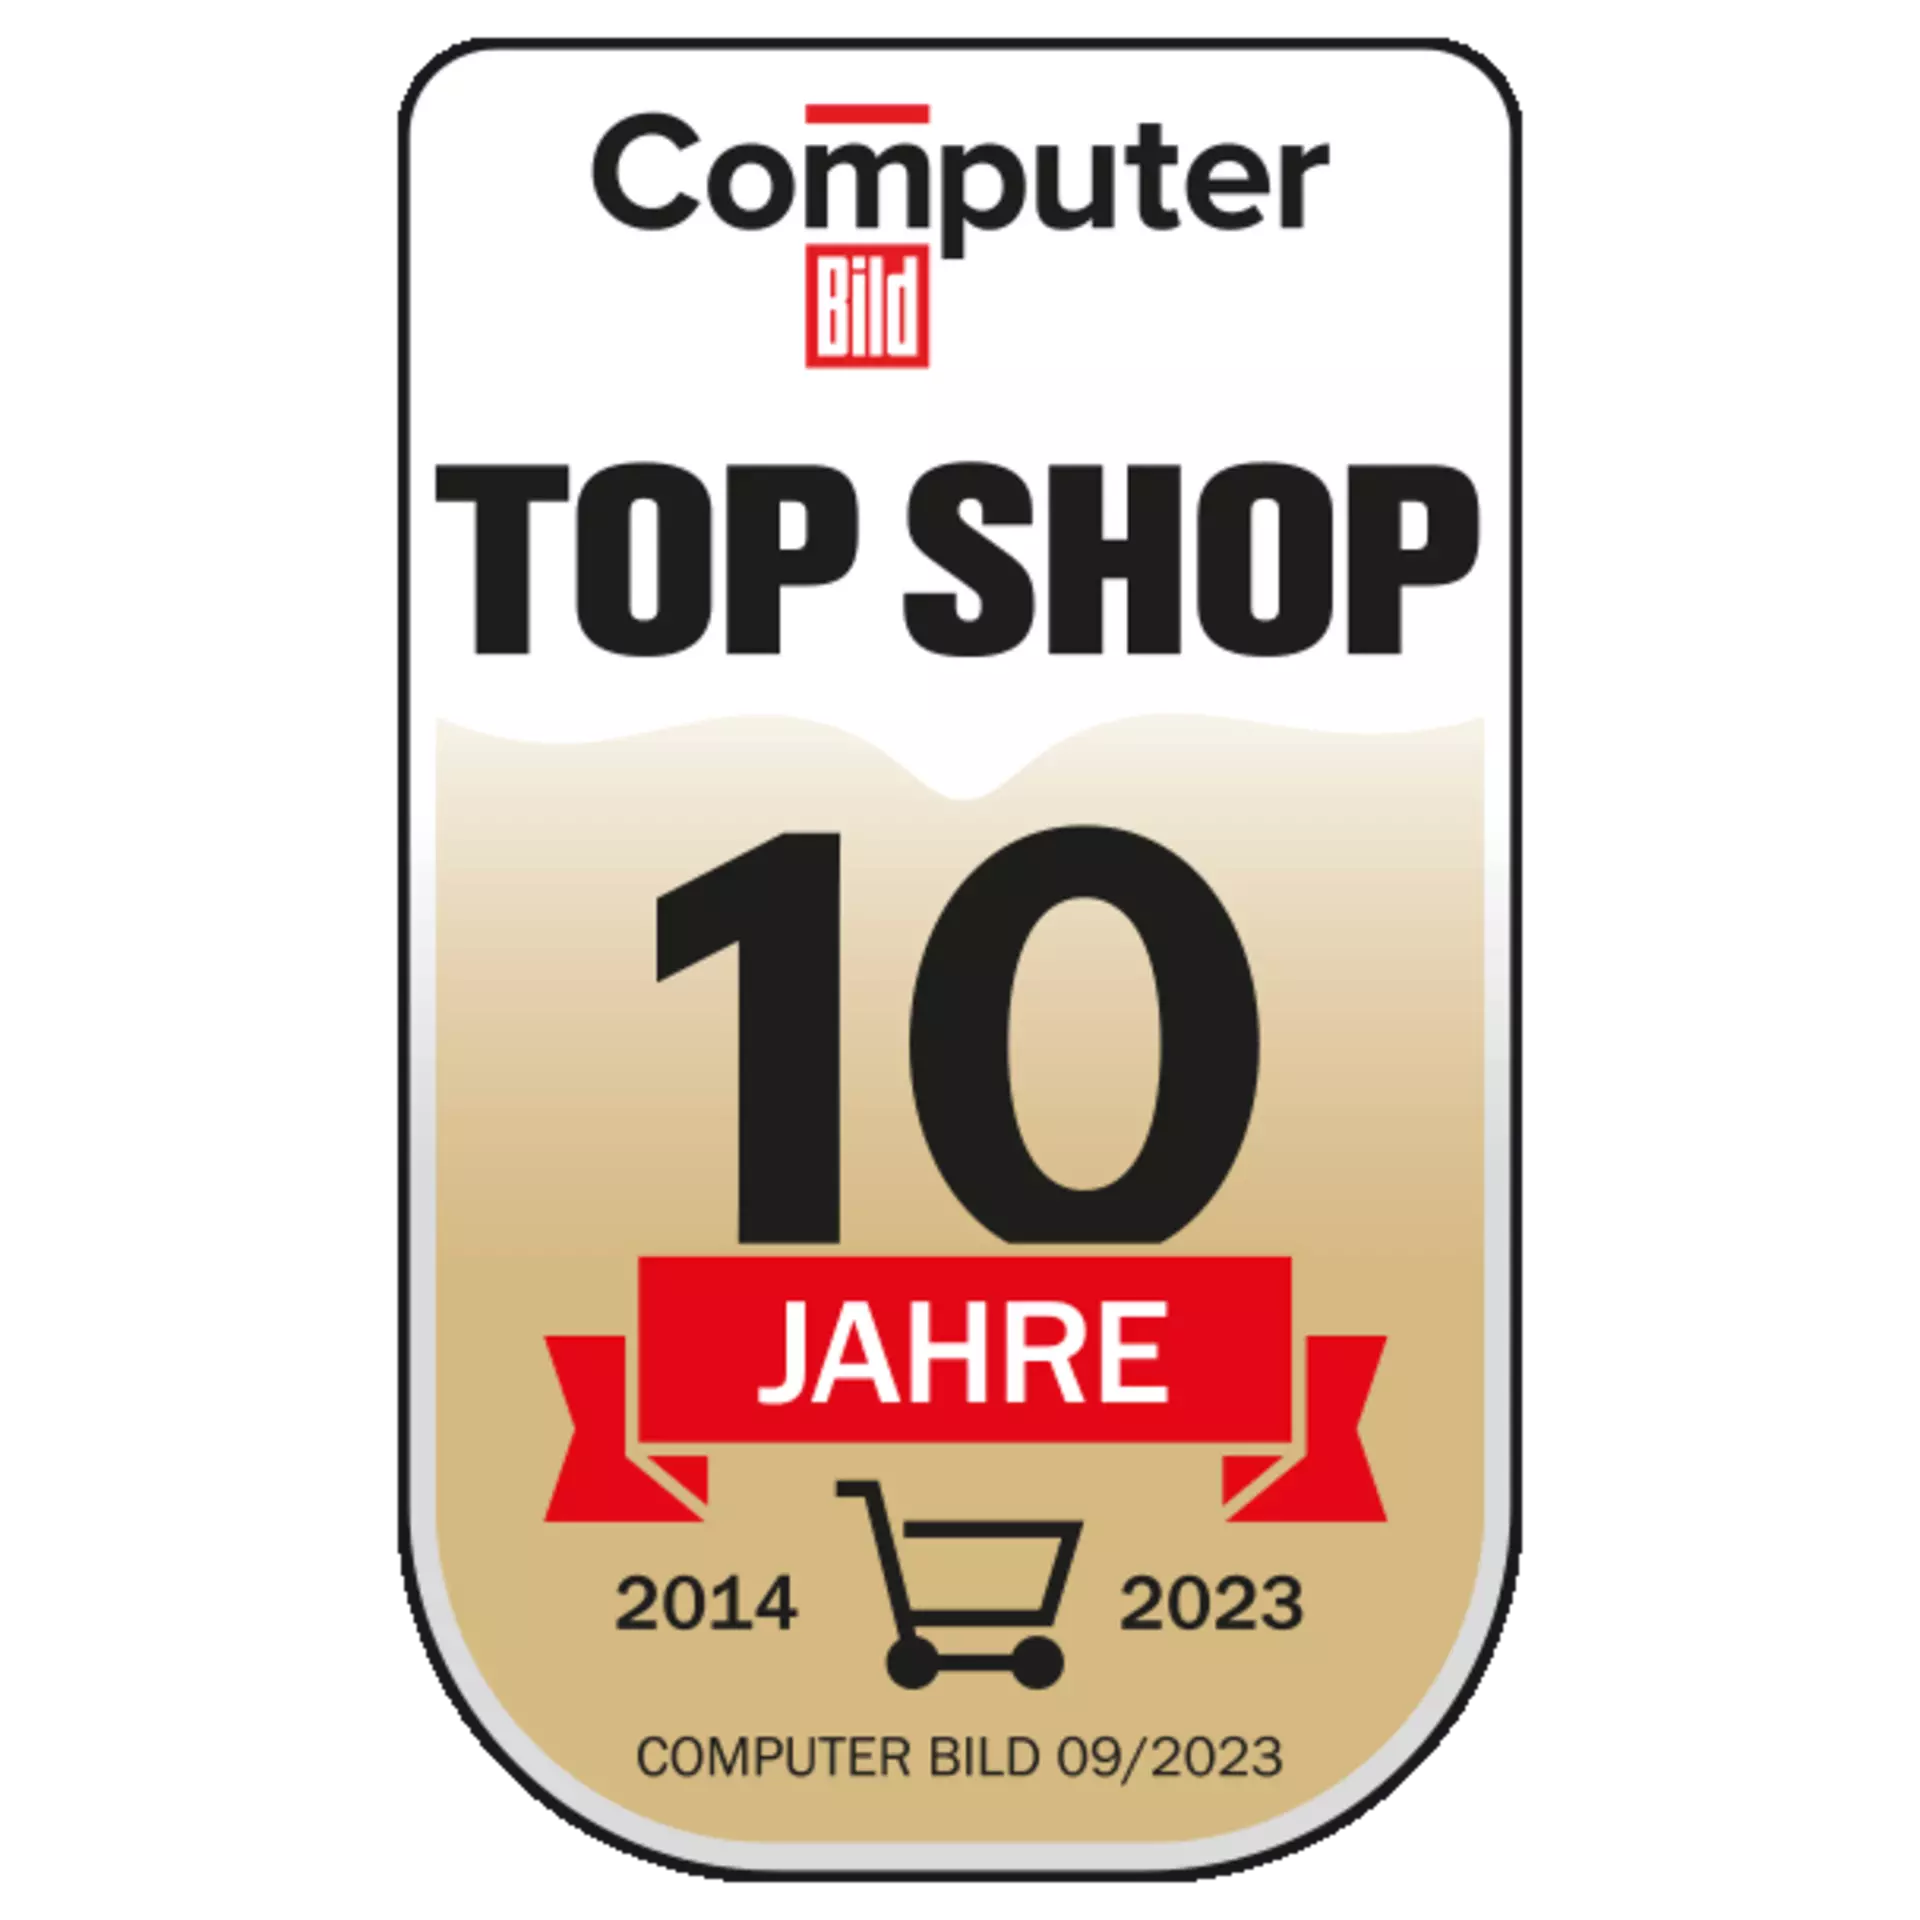 TOP SHOP 2014 bis 2023 - seit 10 Jahren schon ist Möbel Inhofer von Computer Bild mit dem Siegel TOP Shop ausgezeichnet